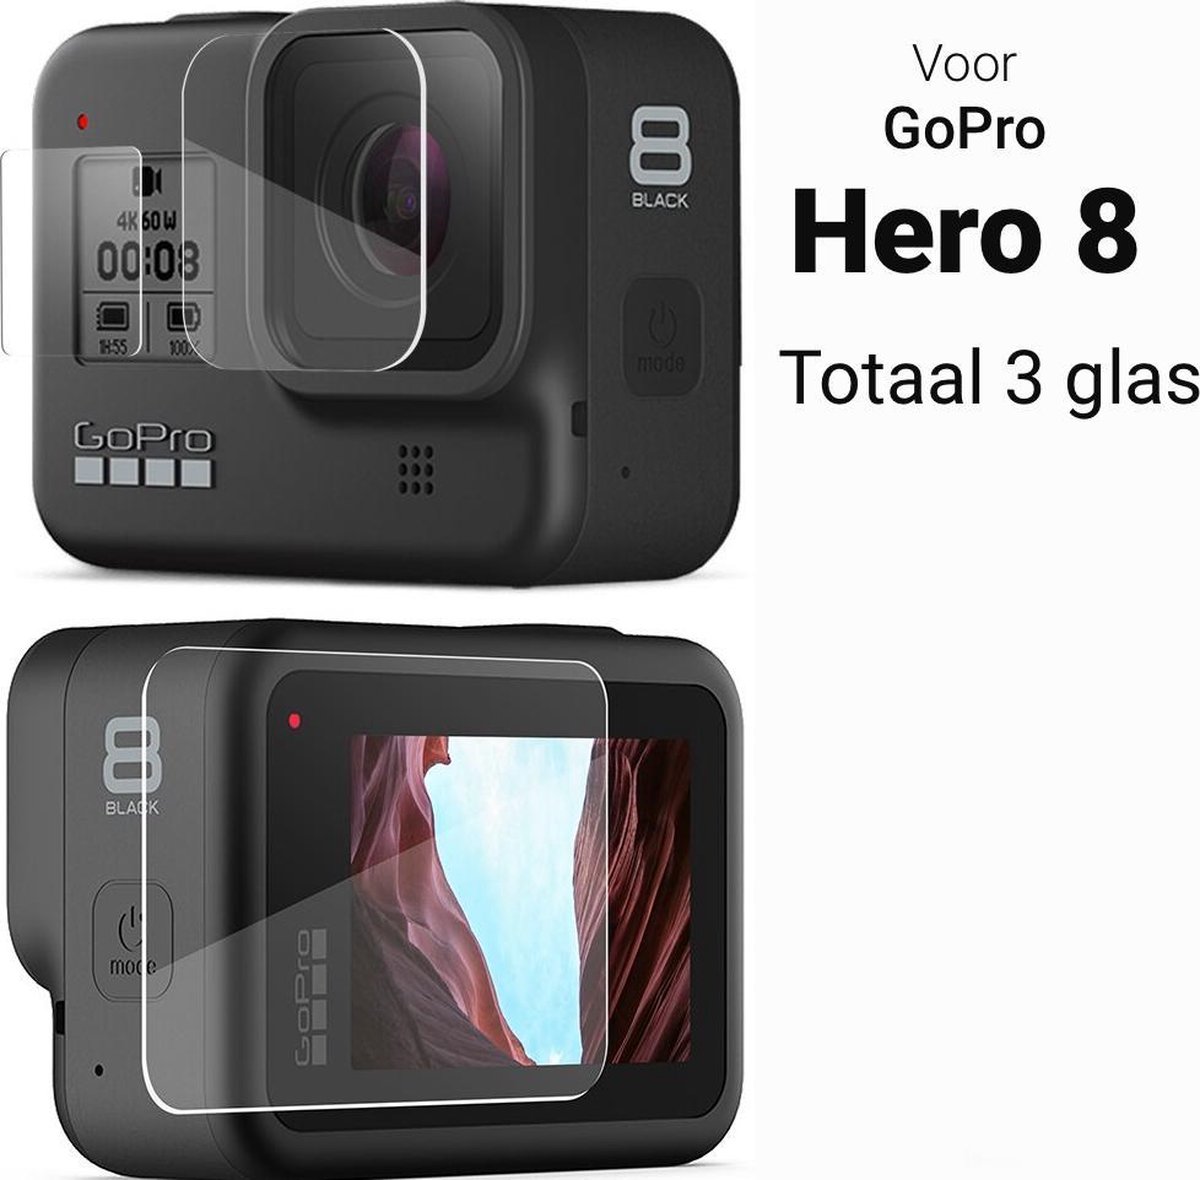 Tempered Glass Screen Protector - LCD + Lens + Mini Voorscherm Cover voor GoPro Hero 8 - 9H Gehard glas screenprotector - Bescherming GoPro Hero 8 Screen Protector